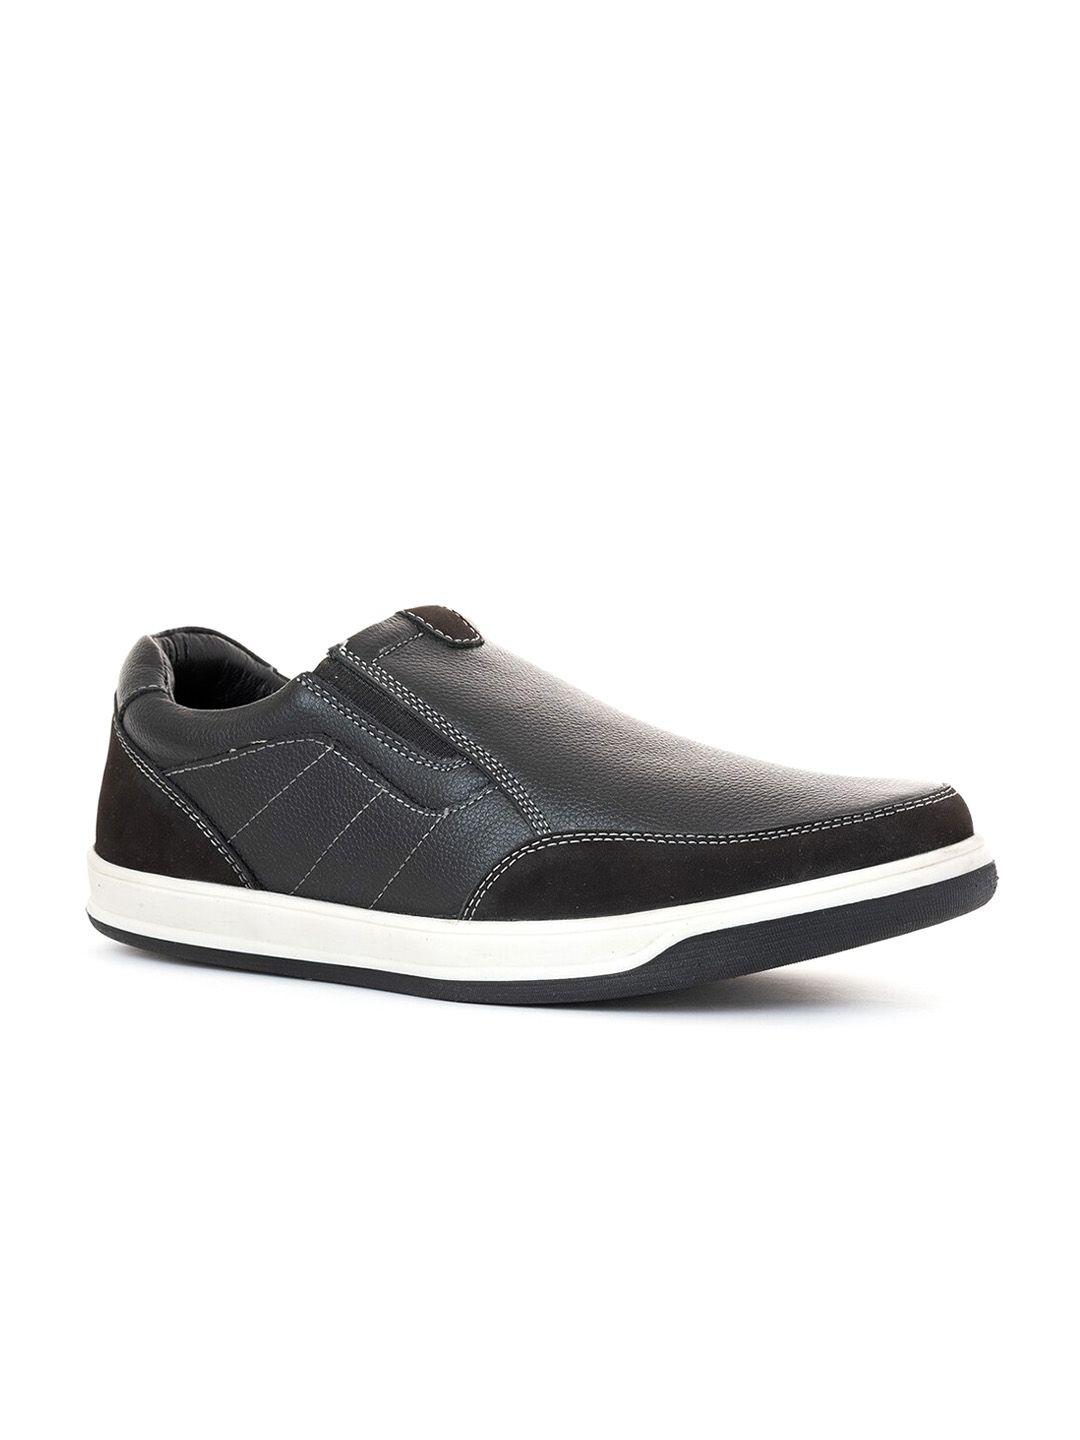 khadims-men-black-leather-slip-on-sneakers